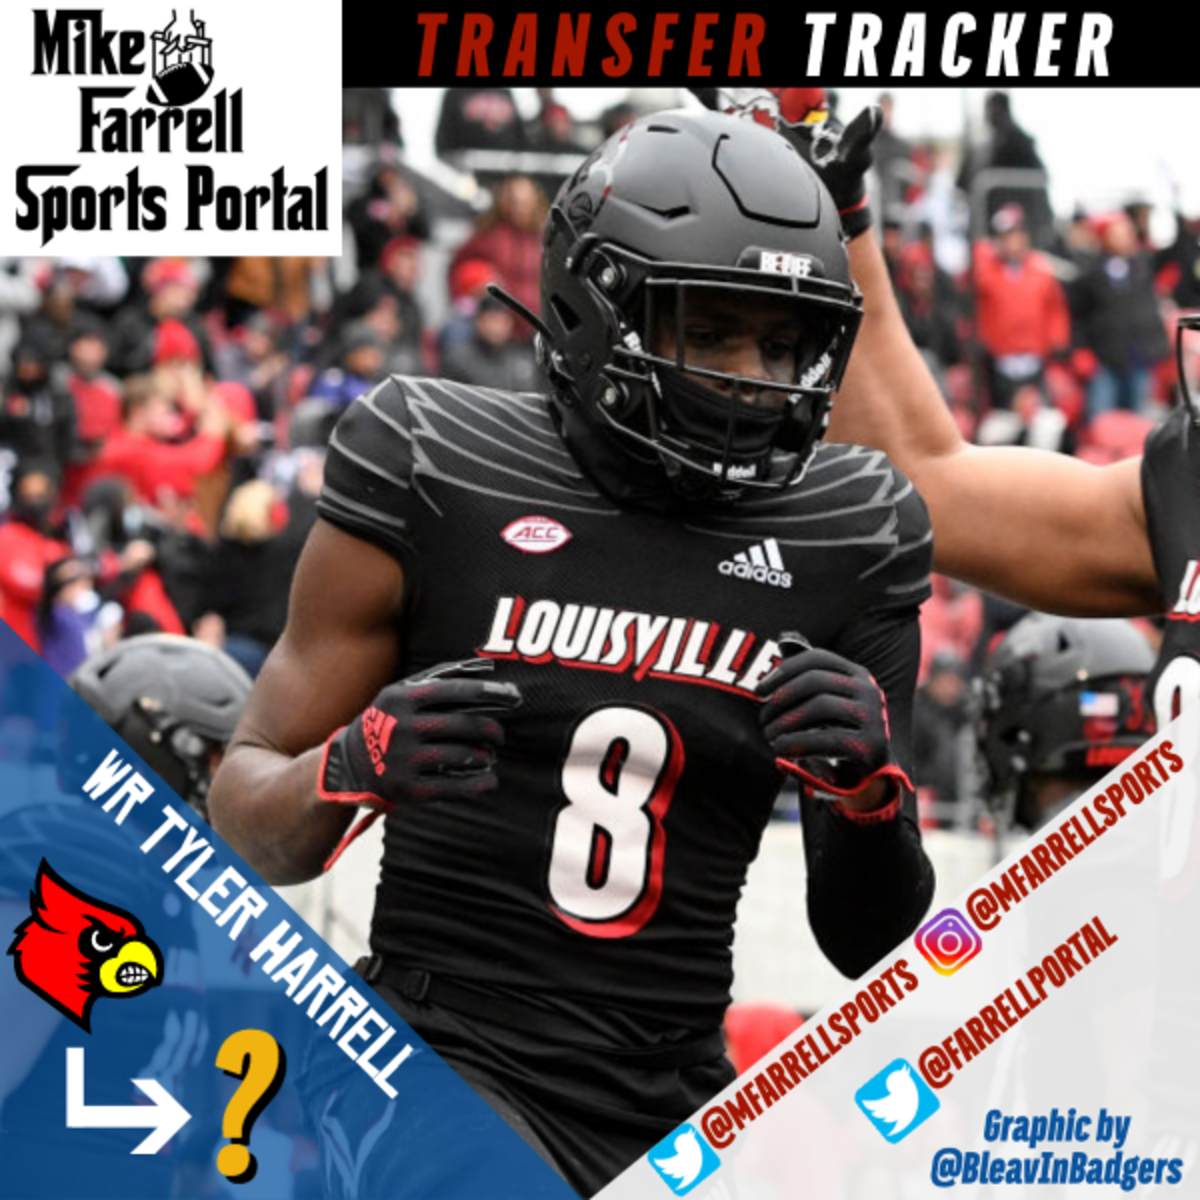 Transfer Tracker Insta - Tyler Harrell 3